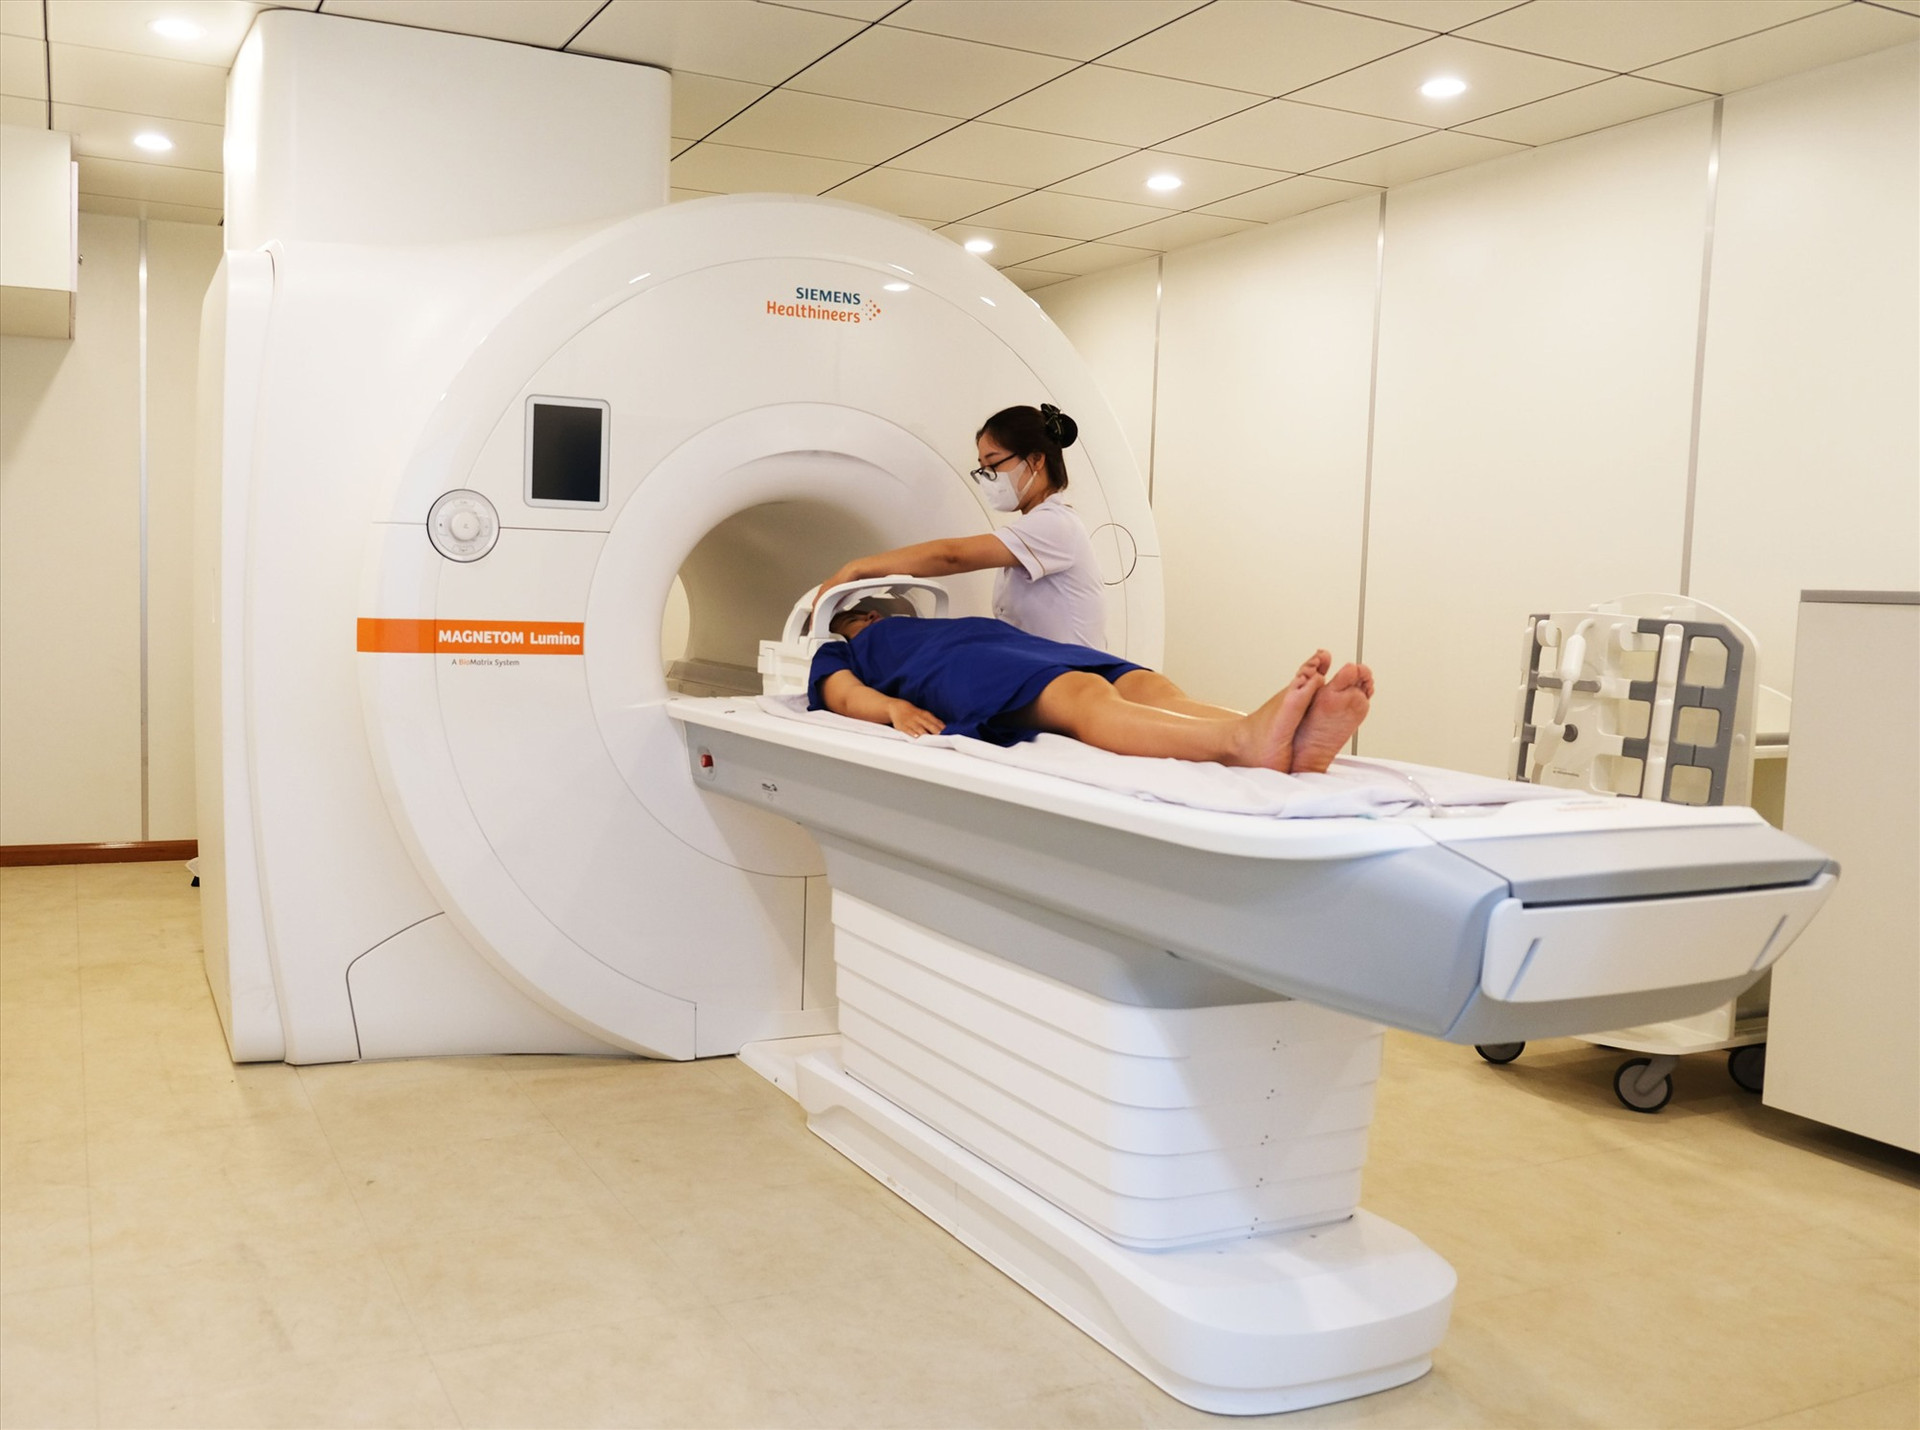 Thiện Nhân có khả năng tầm soát sớm đột quỵ bằng hệ thống máy MRI 3.0 Tesla. Ảnh: A.N